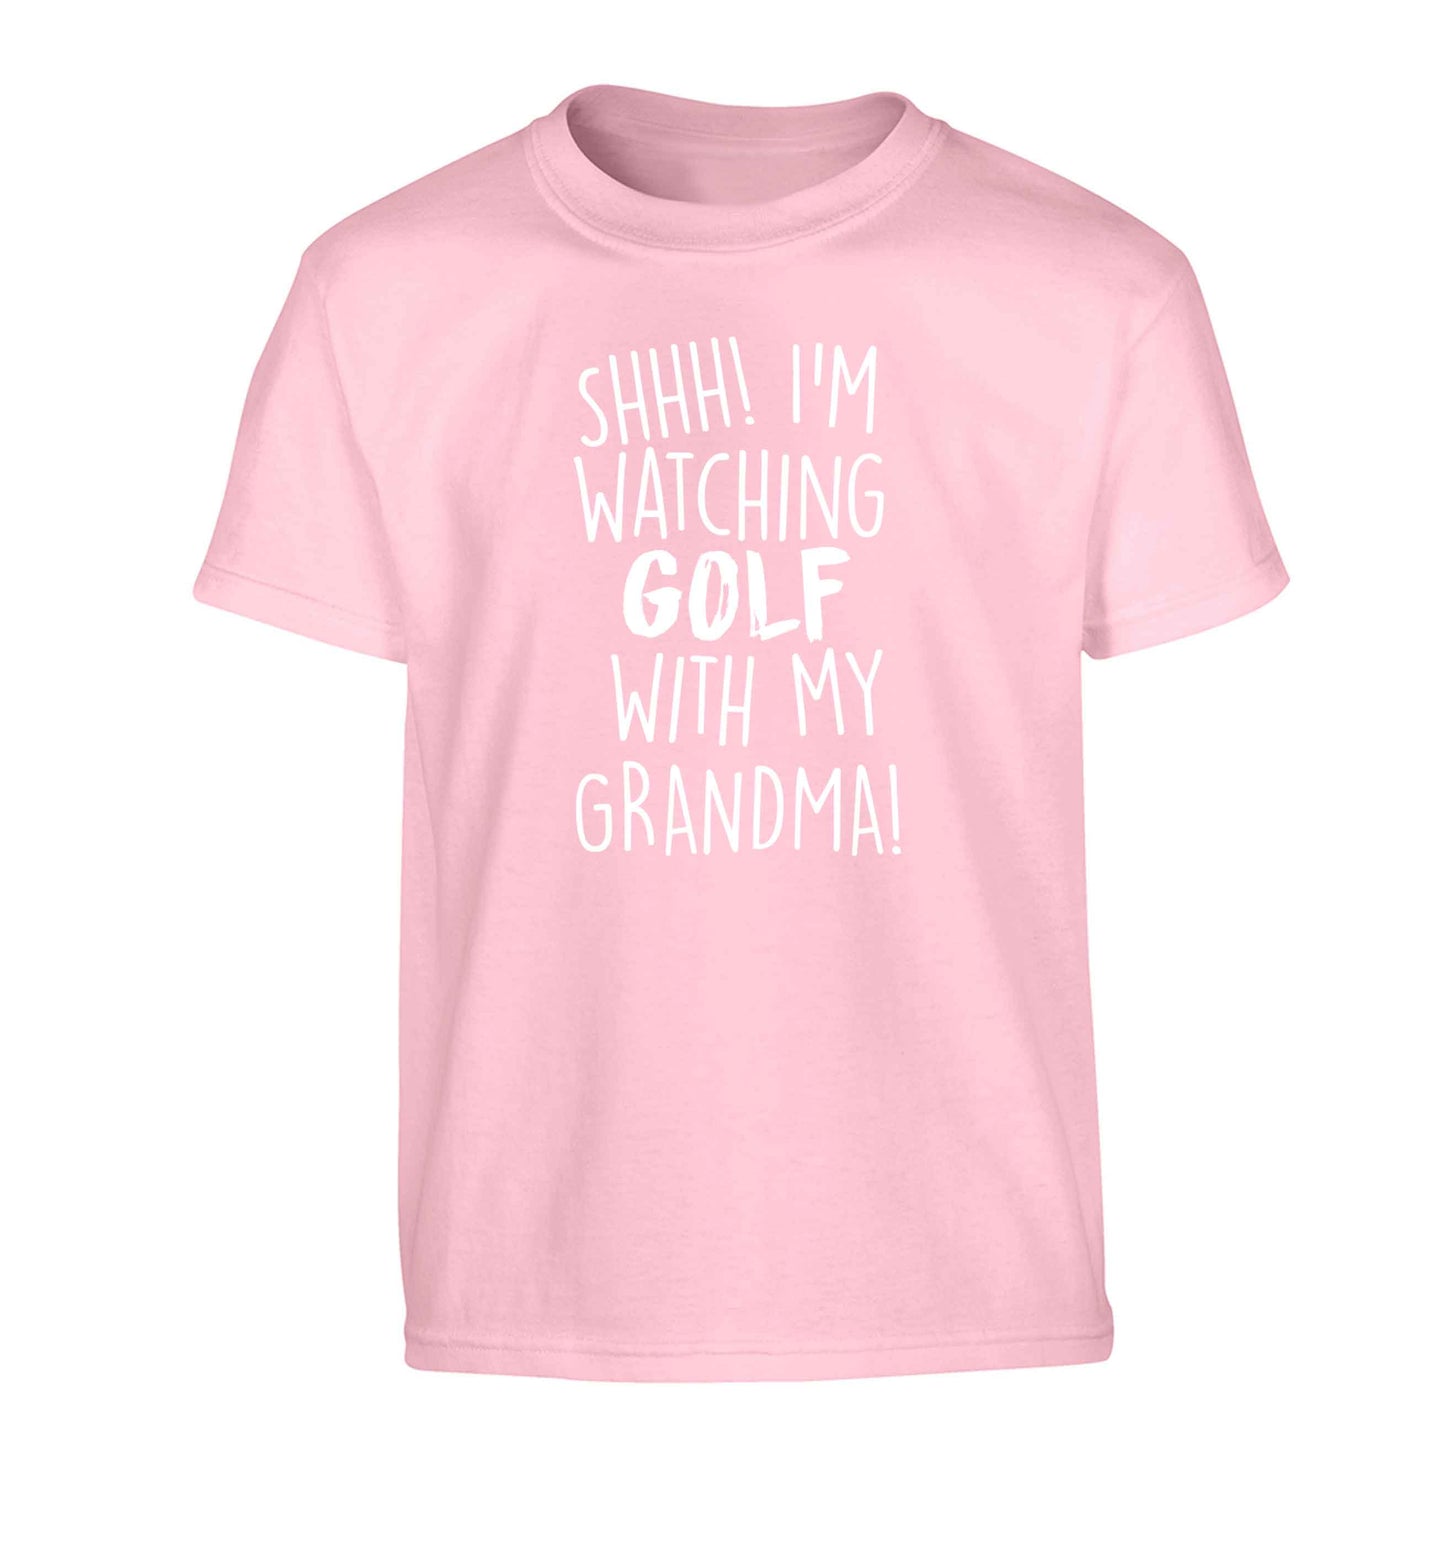 Shh I'm watching golf with my grandma Children's light pink Tshirt 12-13 Years